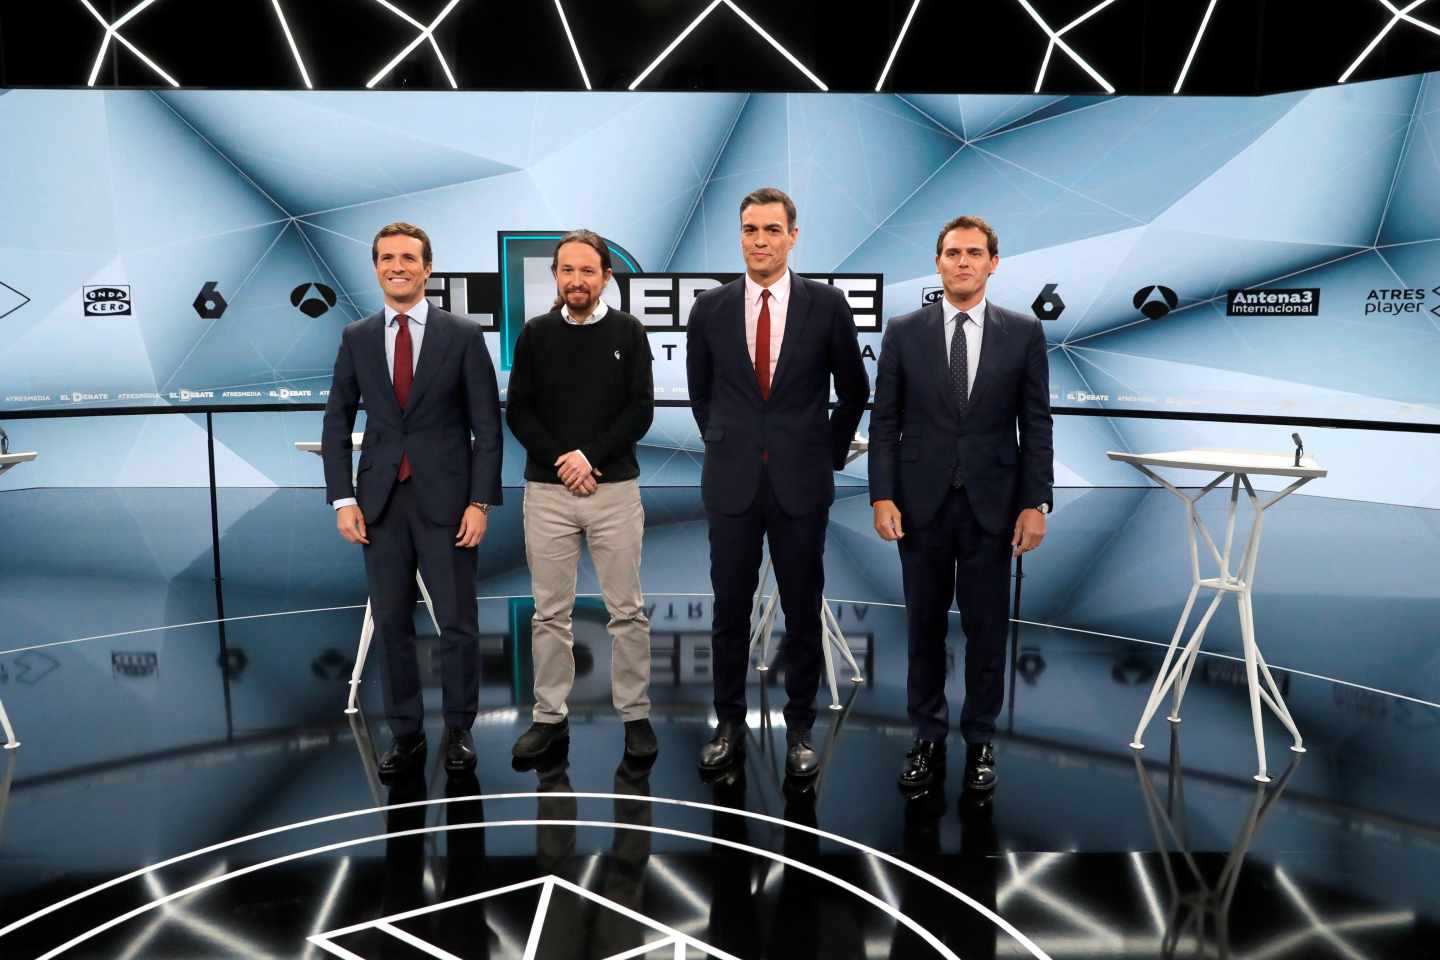 El debate de Atresmedia supera al de RTVE con 9,5 millones de espectadores